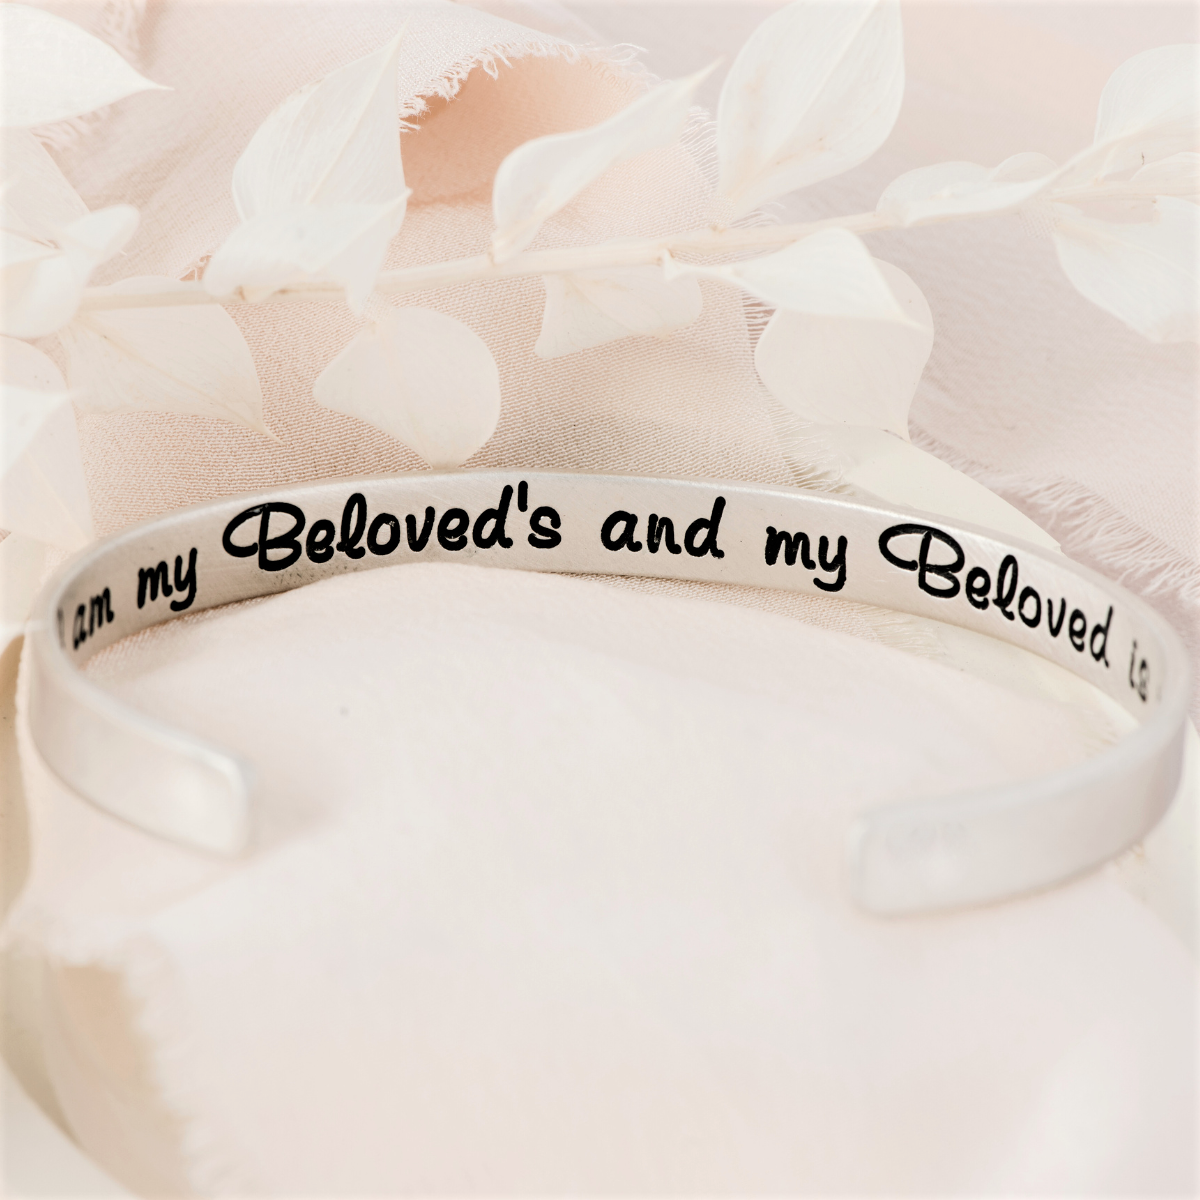 Beloved Engraved Cuff Bracelet | Song of Solomon 6:3 | Sterling Silver or 14k Gold